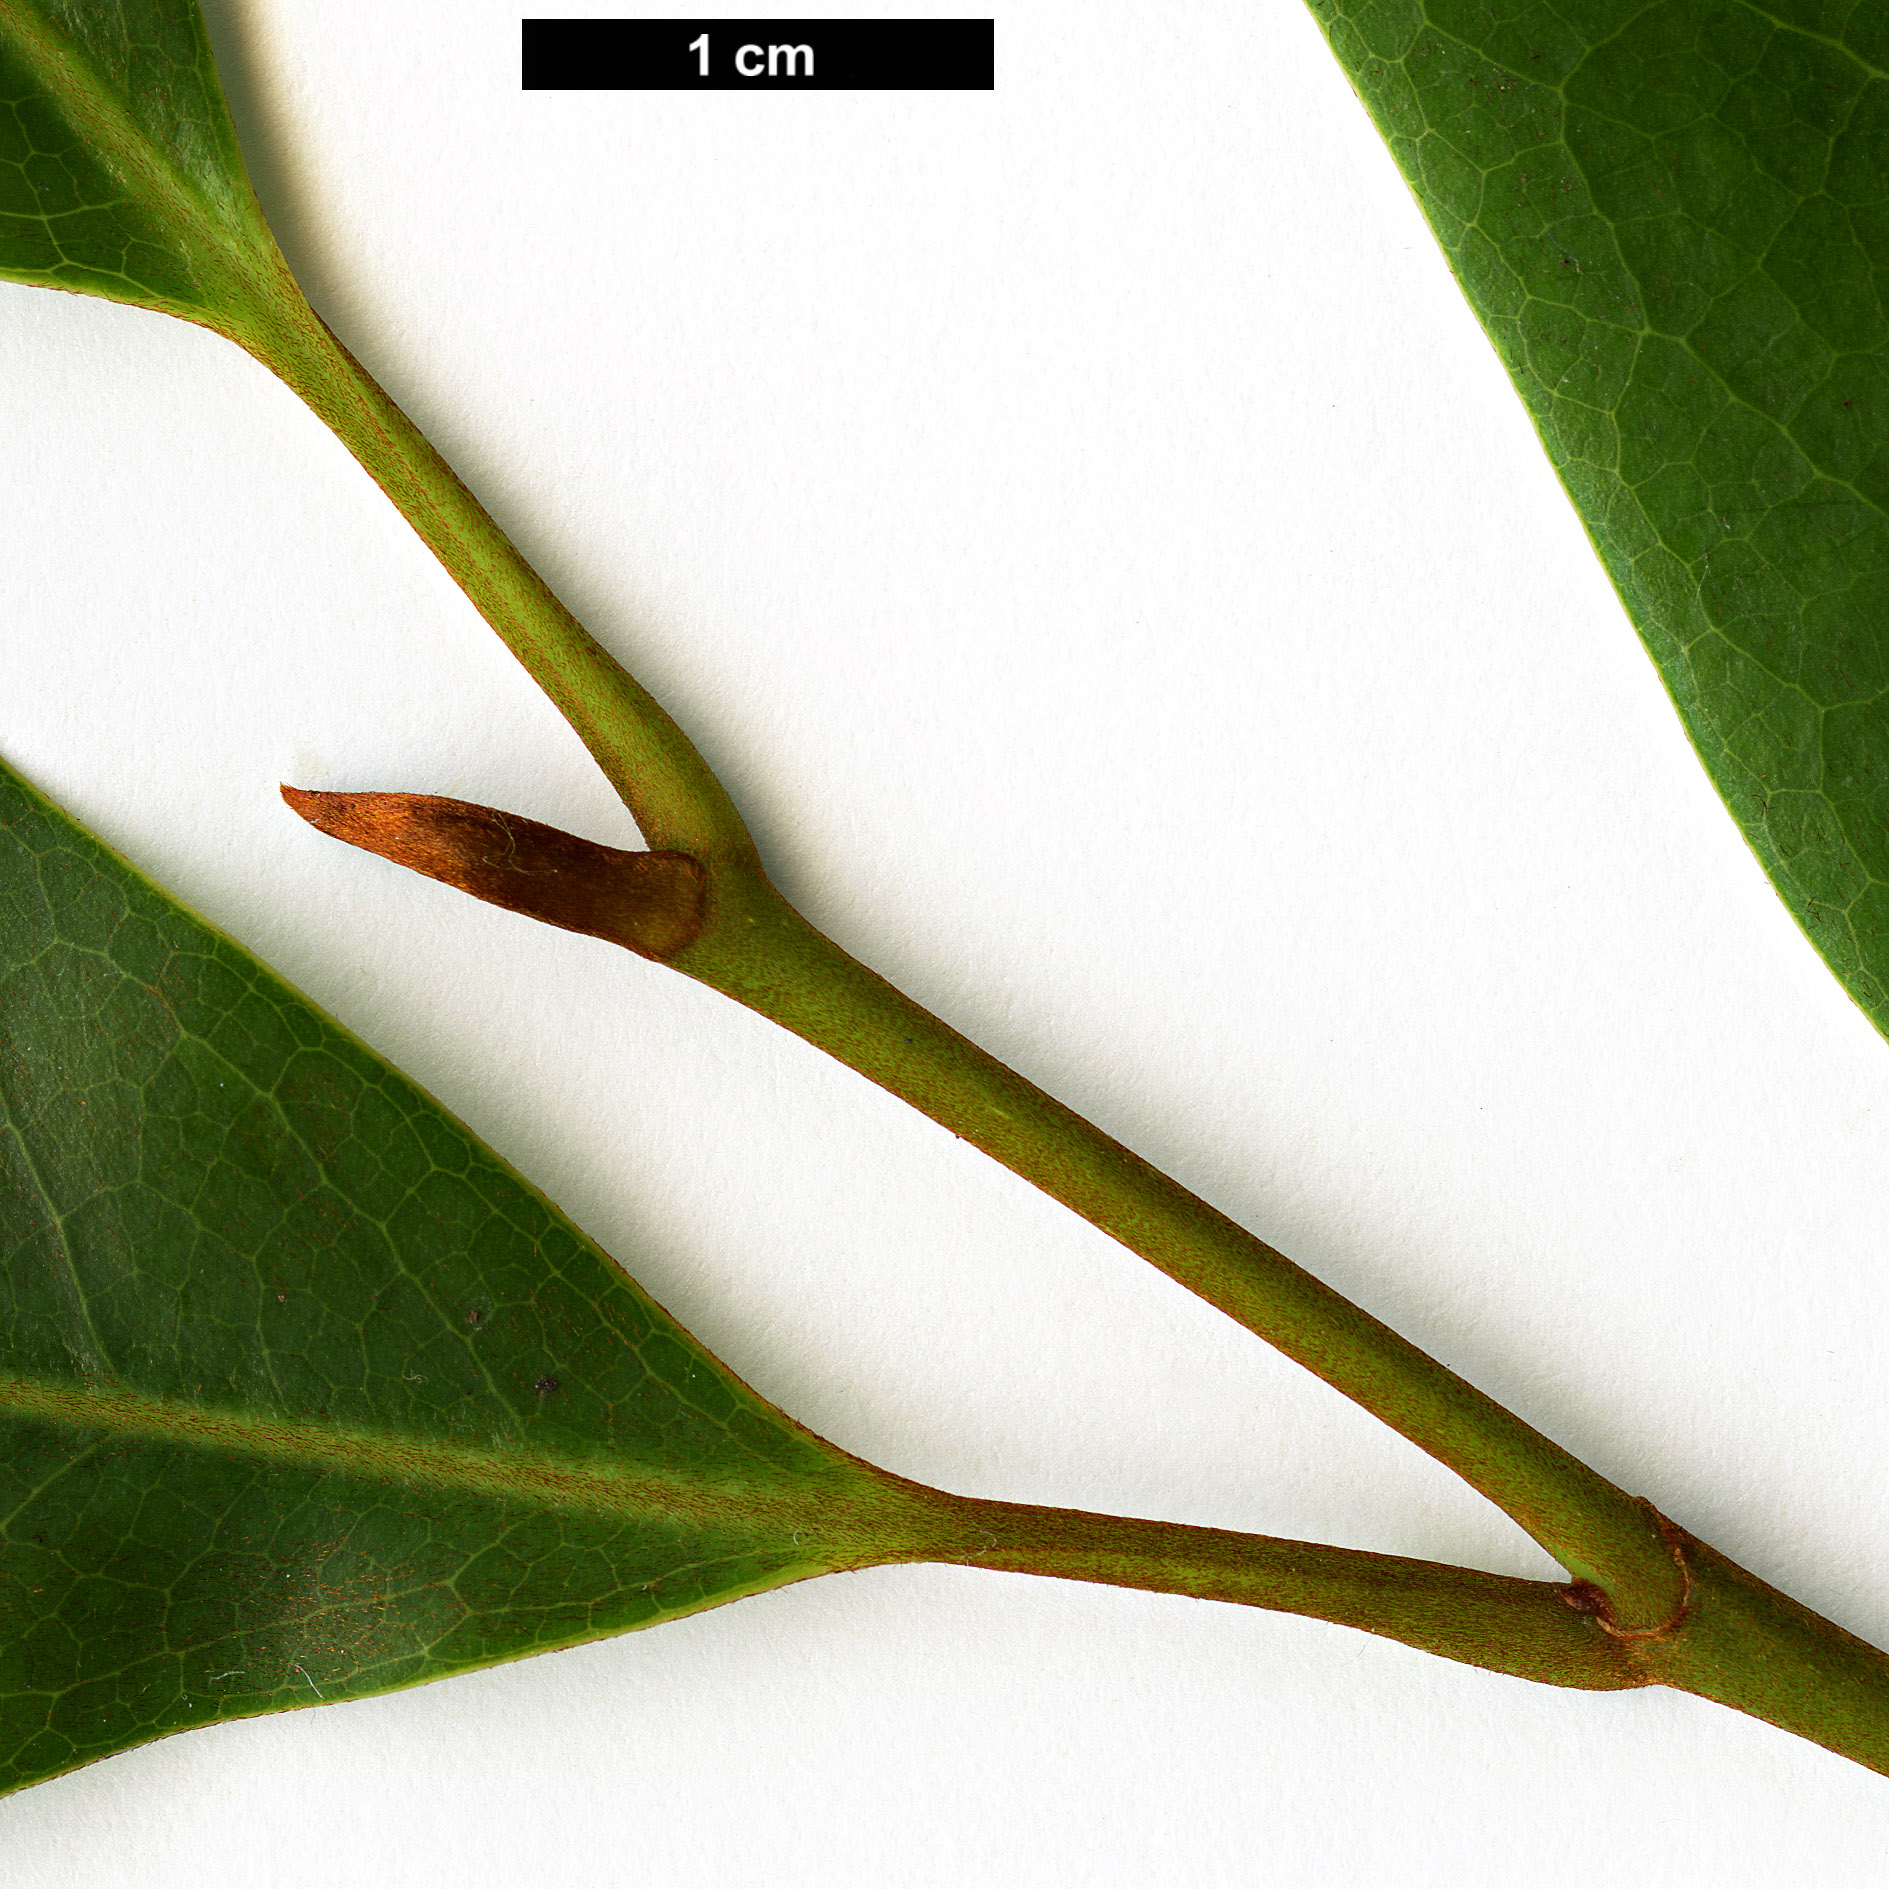 High resolution image: Family: Magnoliaceae - Genus: Magnolia - Taxon: leveilleana